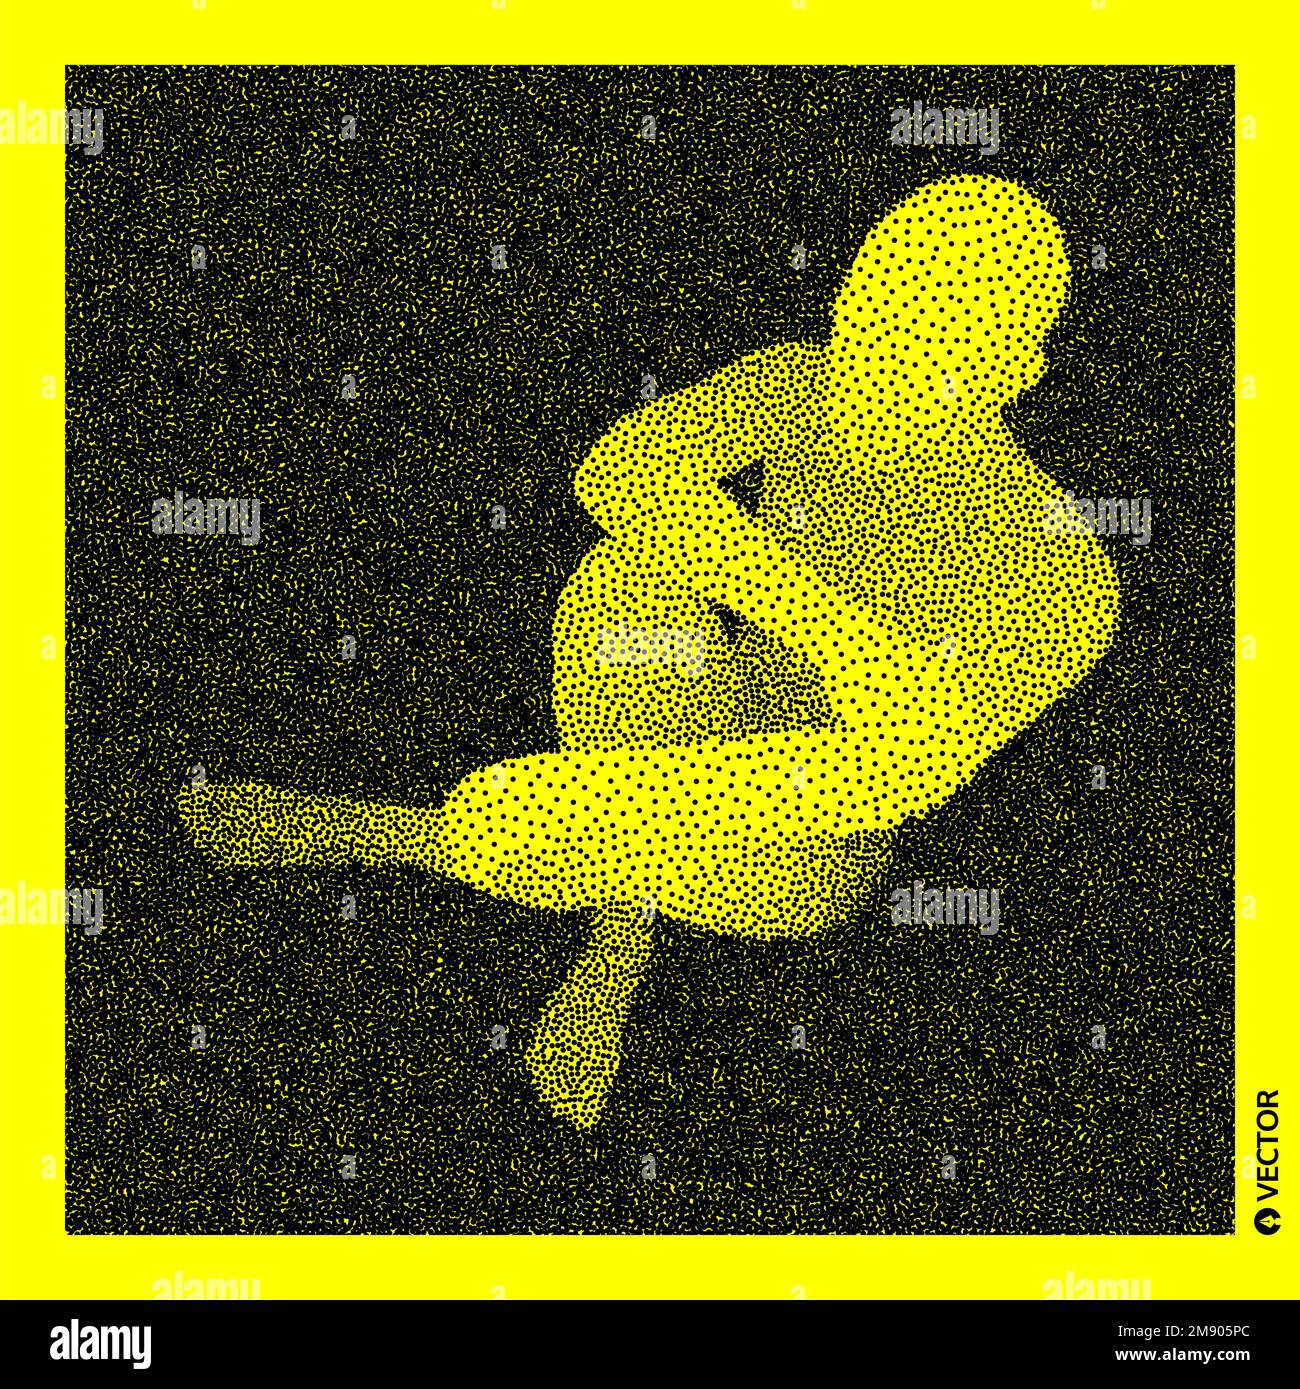 L'homme assis. Corps humain 3D Modèle. Conception granuleux noir et jaune. Vector illustration pointillées. Illustration de Vecteur